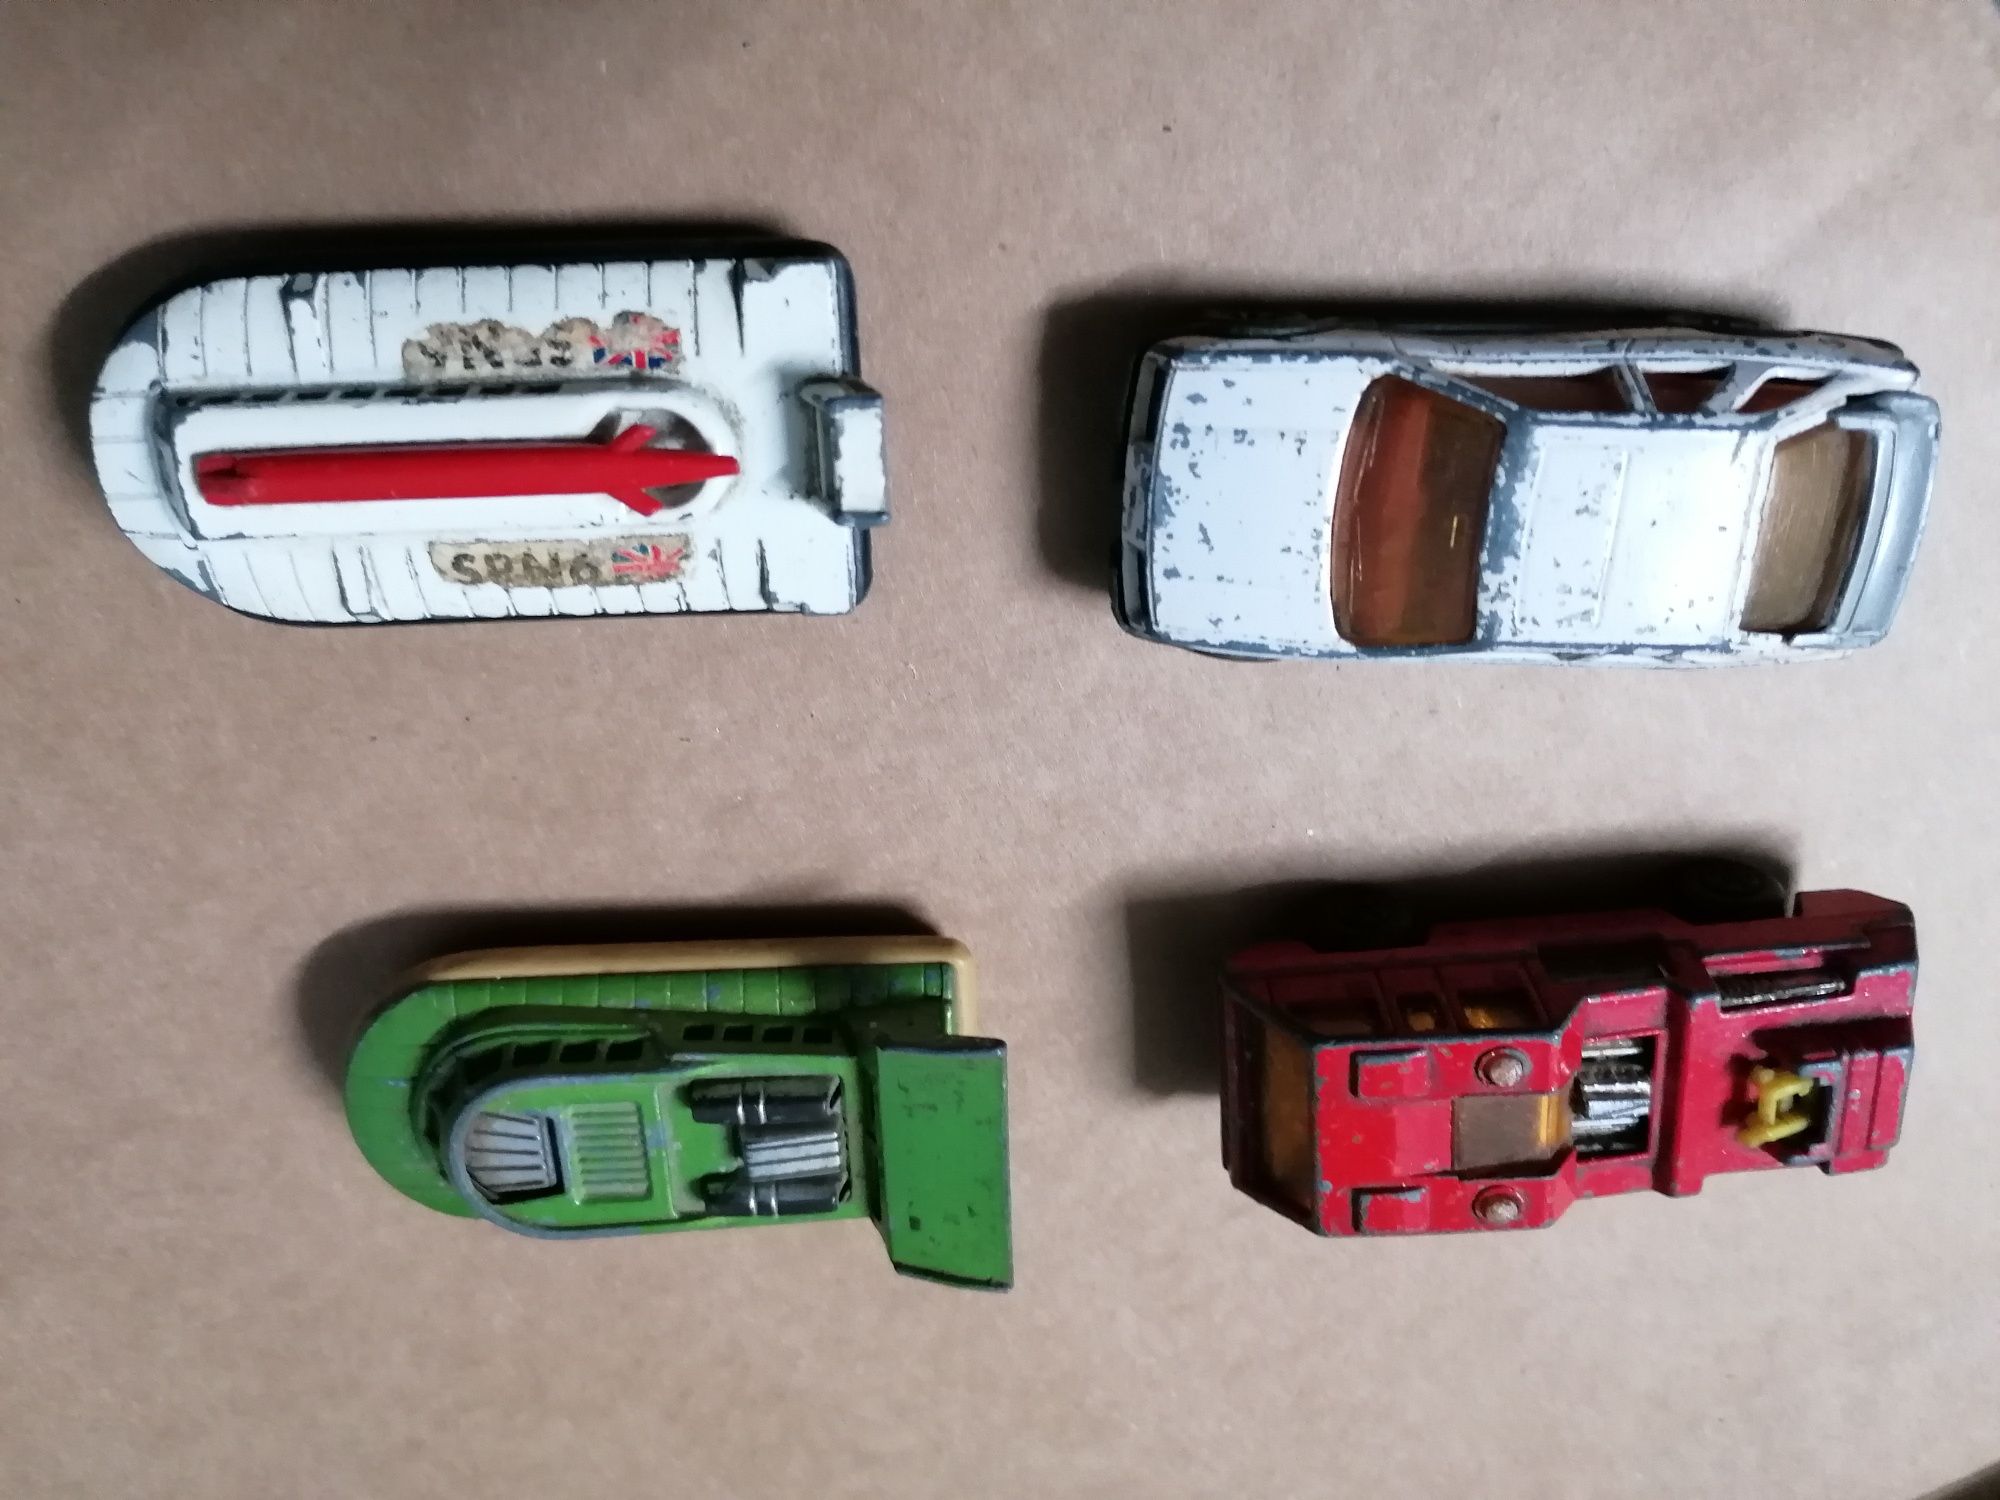 Miniaturas de carrinhos da marca matchbox